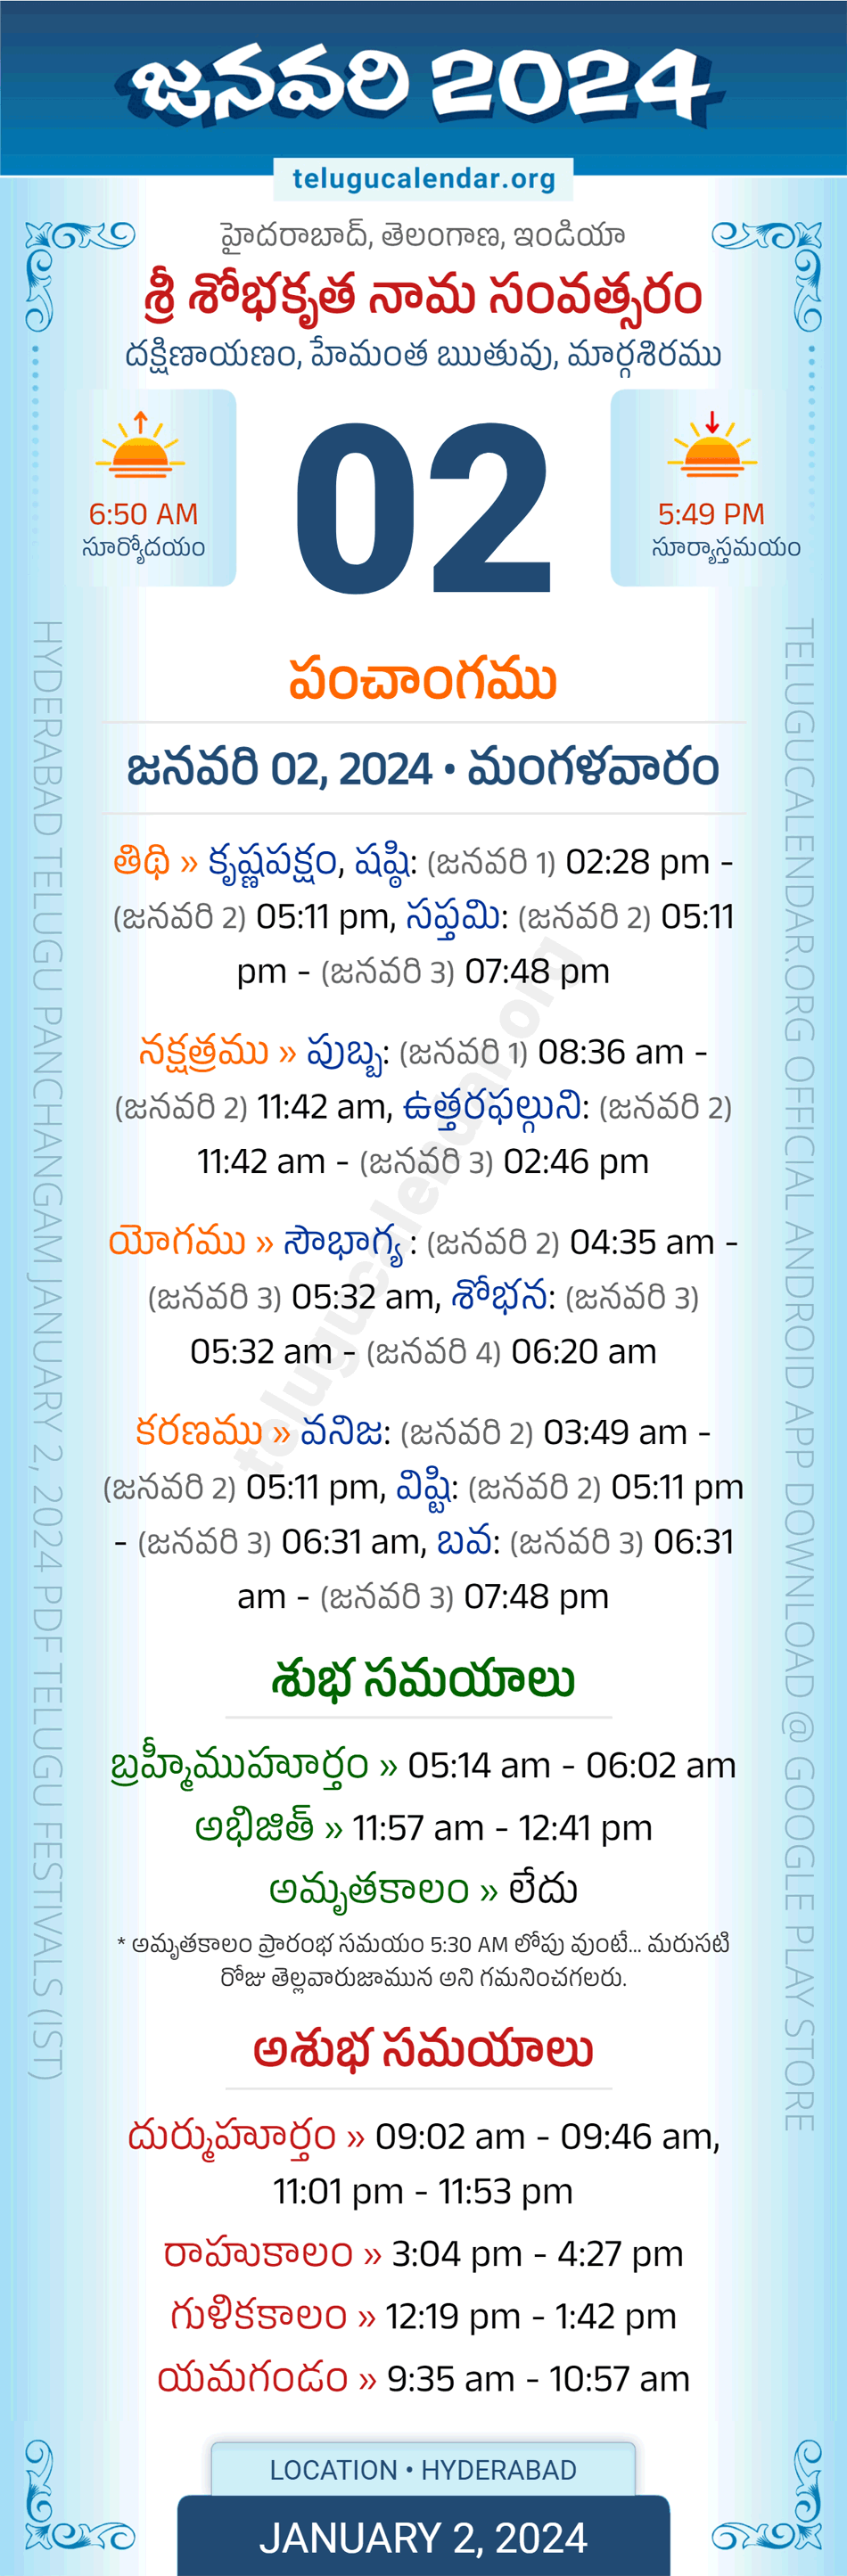 January 2, 2024 Telugu Calendar Panchangam Telangana